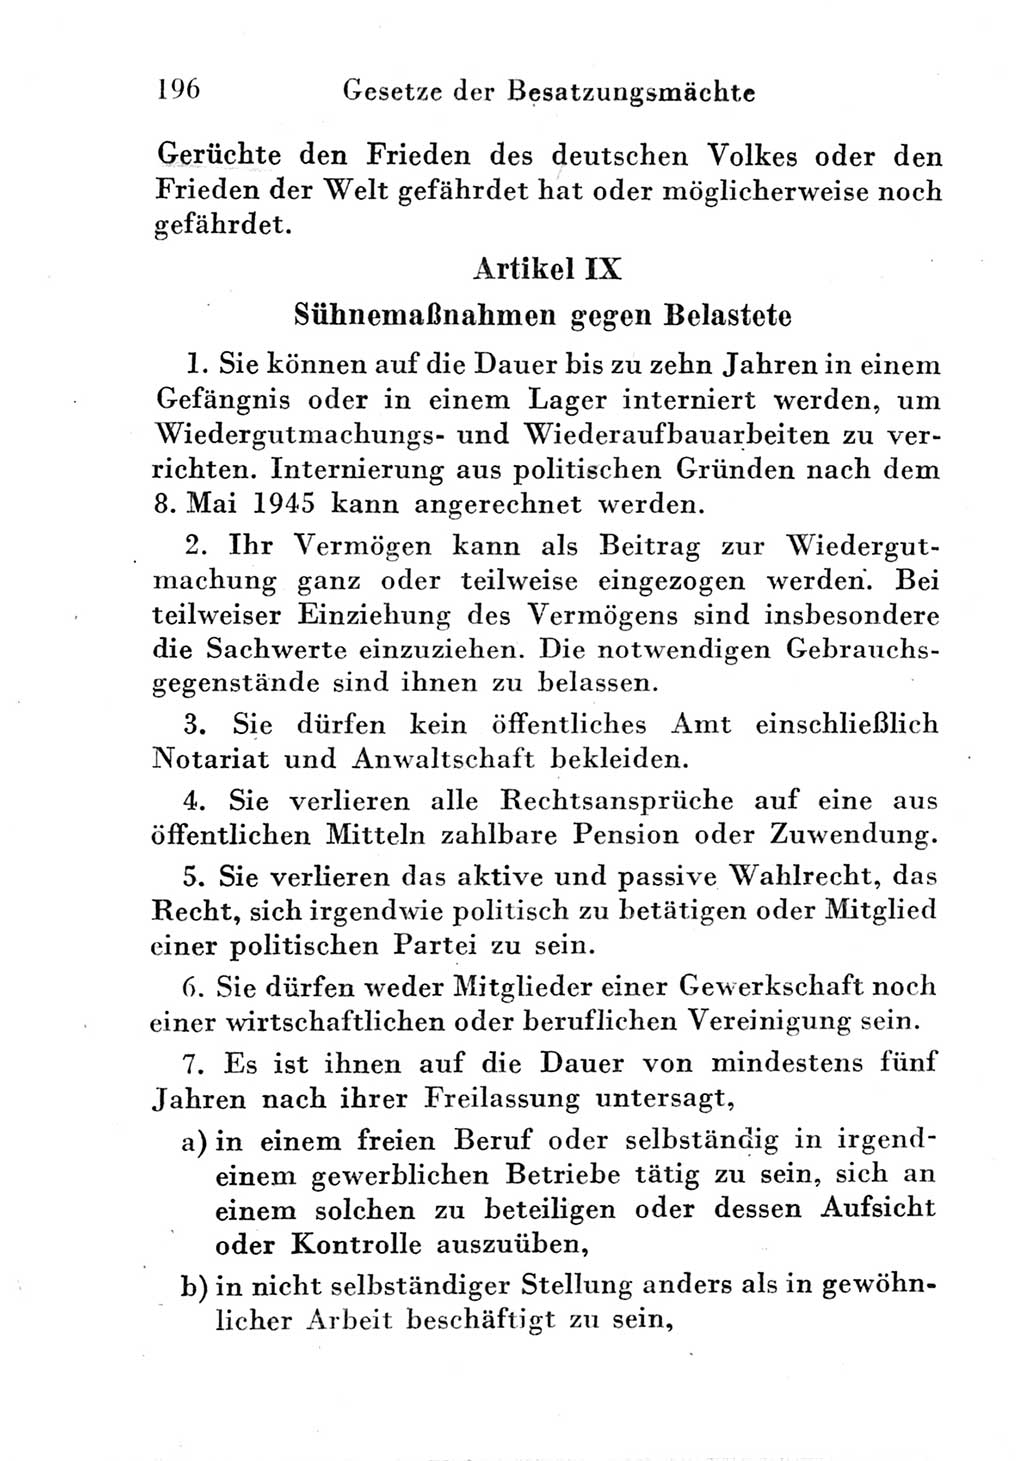 Strafgesetzbuch (StGB) und andere Strafgesetze [Deutsche Demokratische Republik (DDR)] 1951, Seite 196 (StGB Strafges. DDR 1951, S. 196)